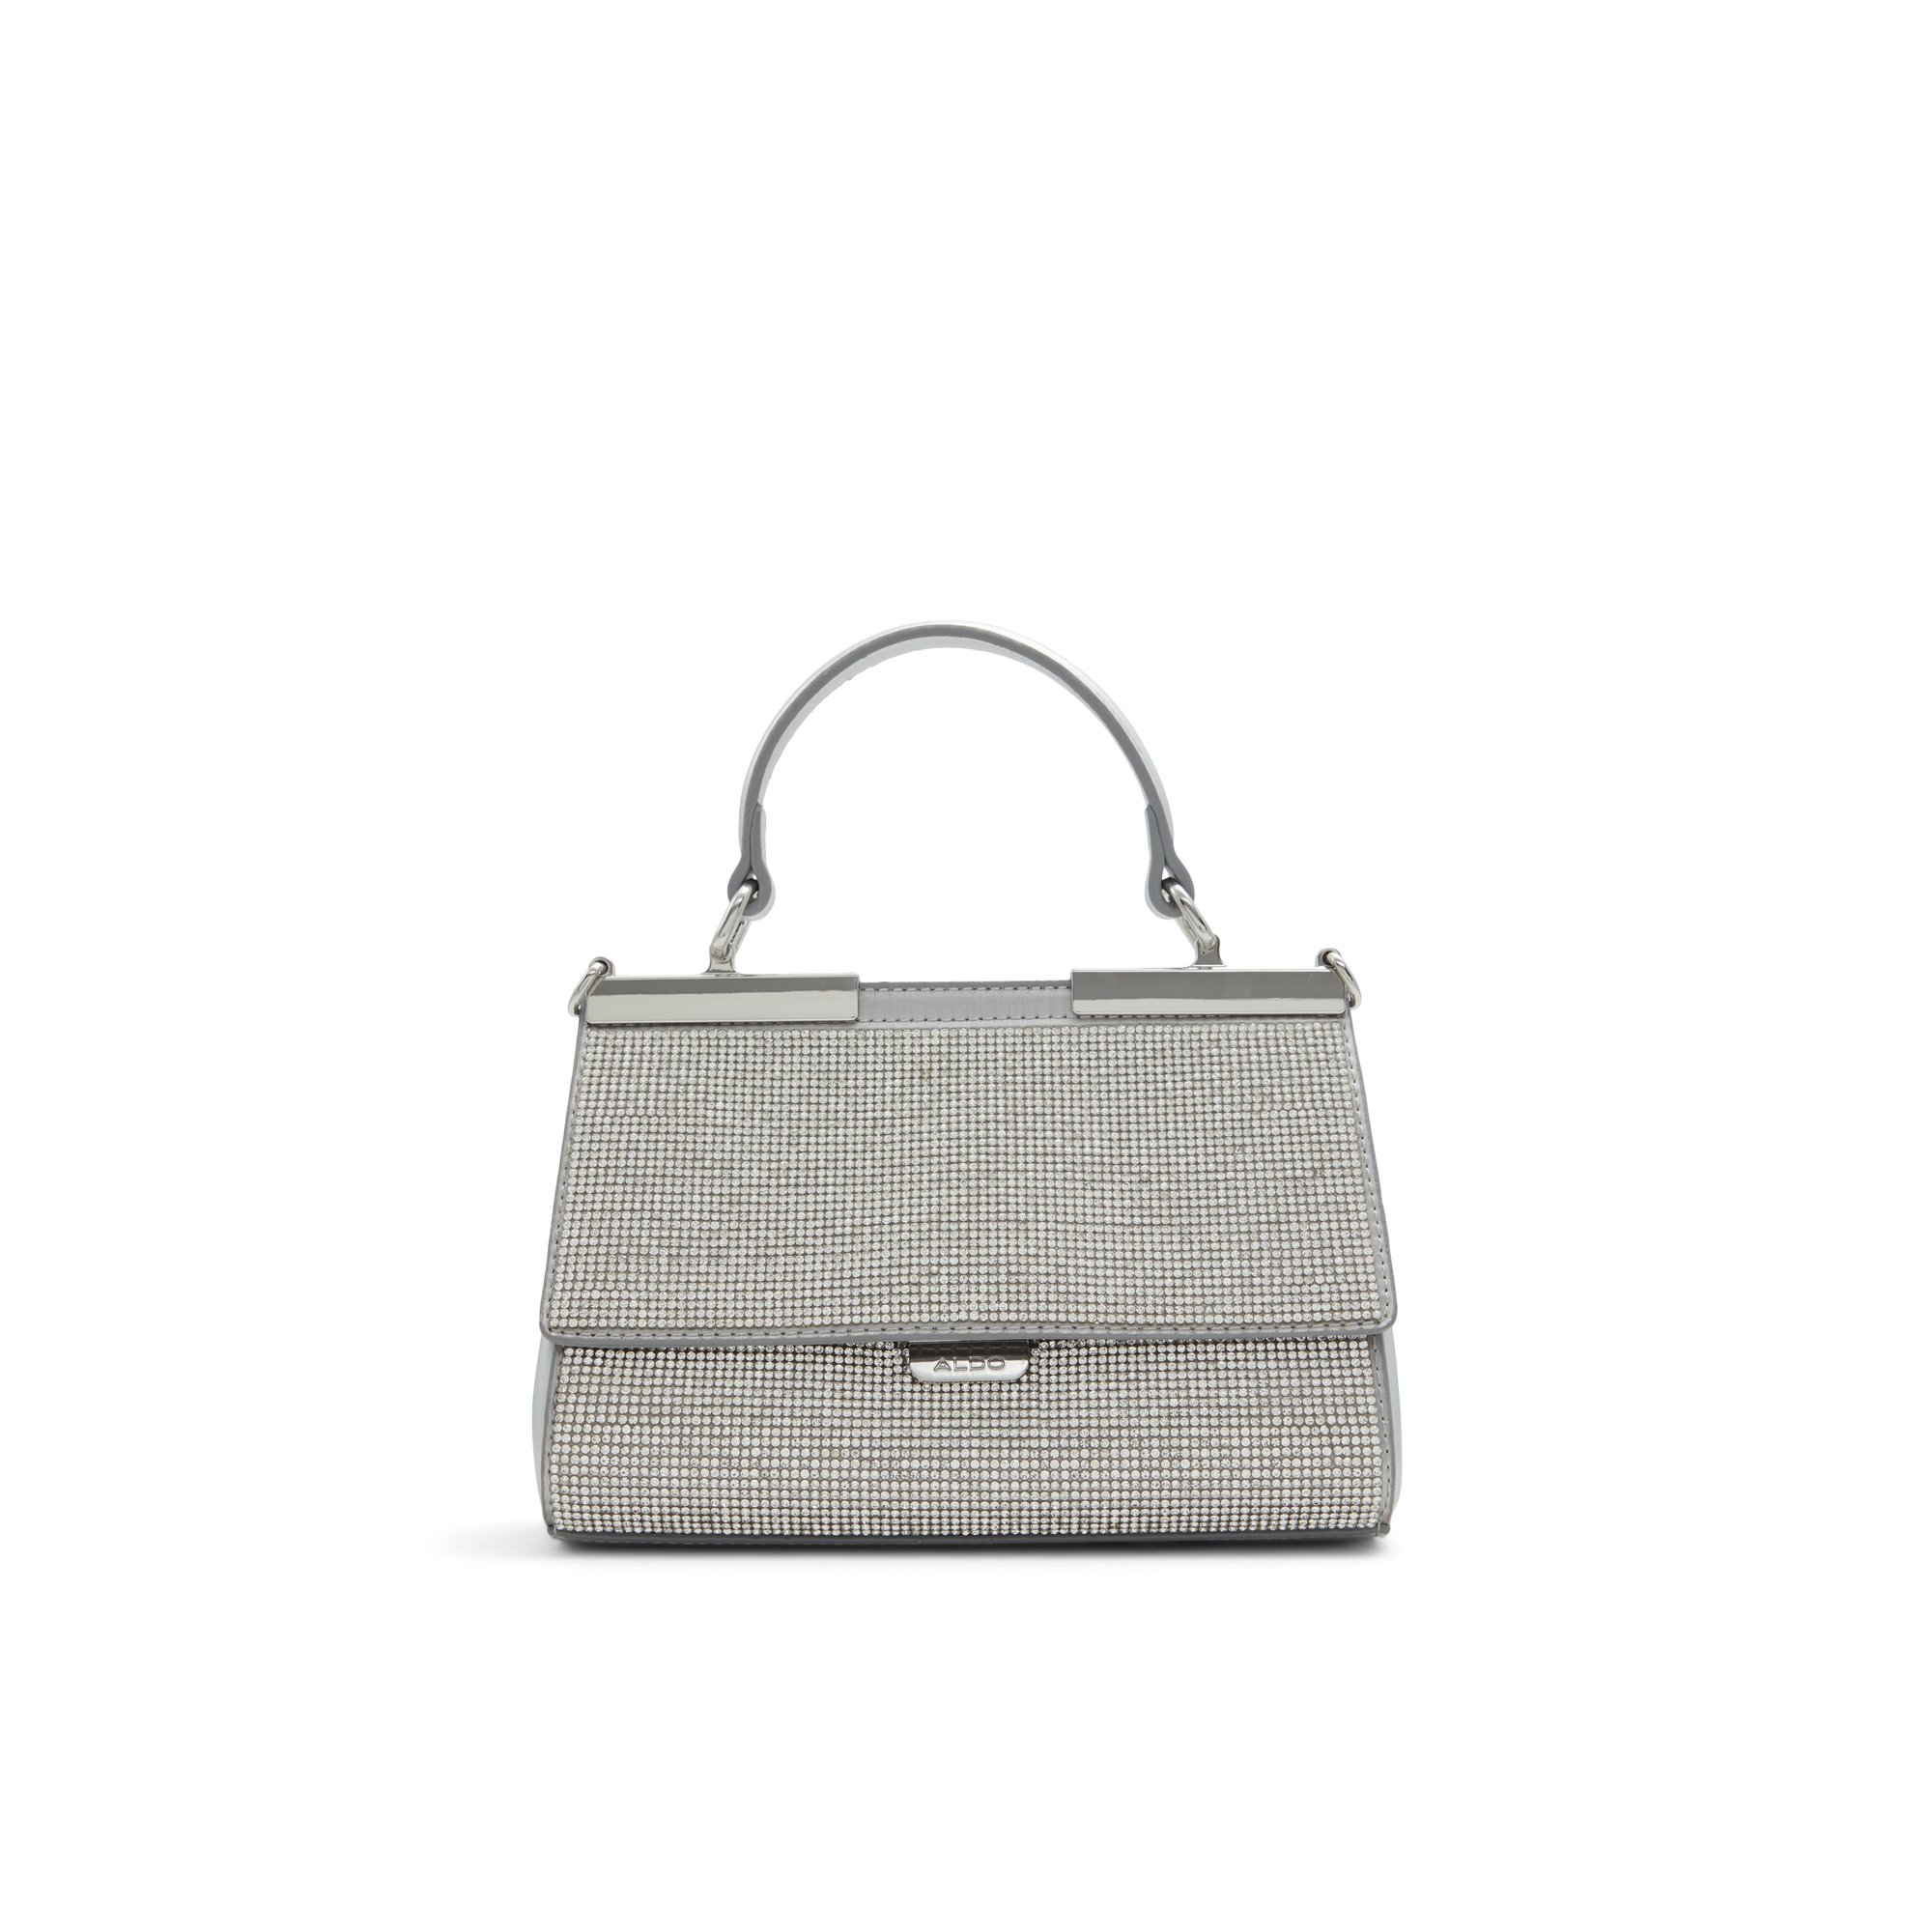 ALDO Seine - Women's Handbags Top Handle - Silver